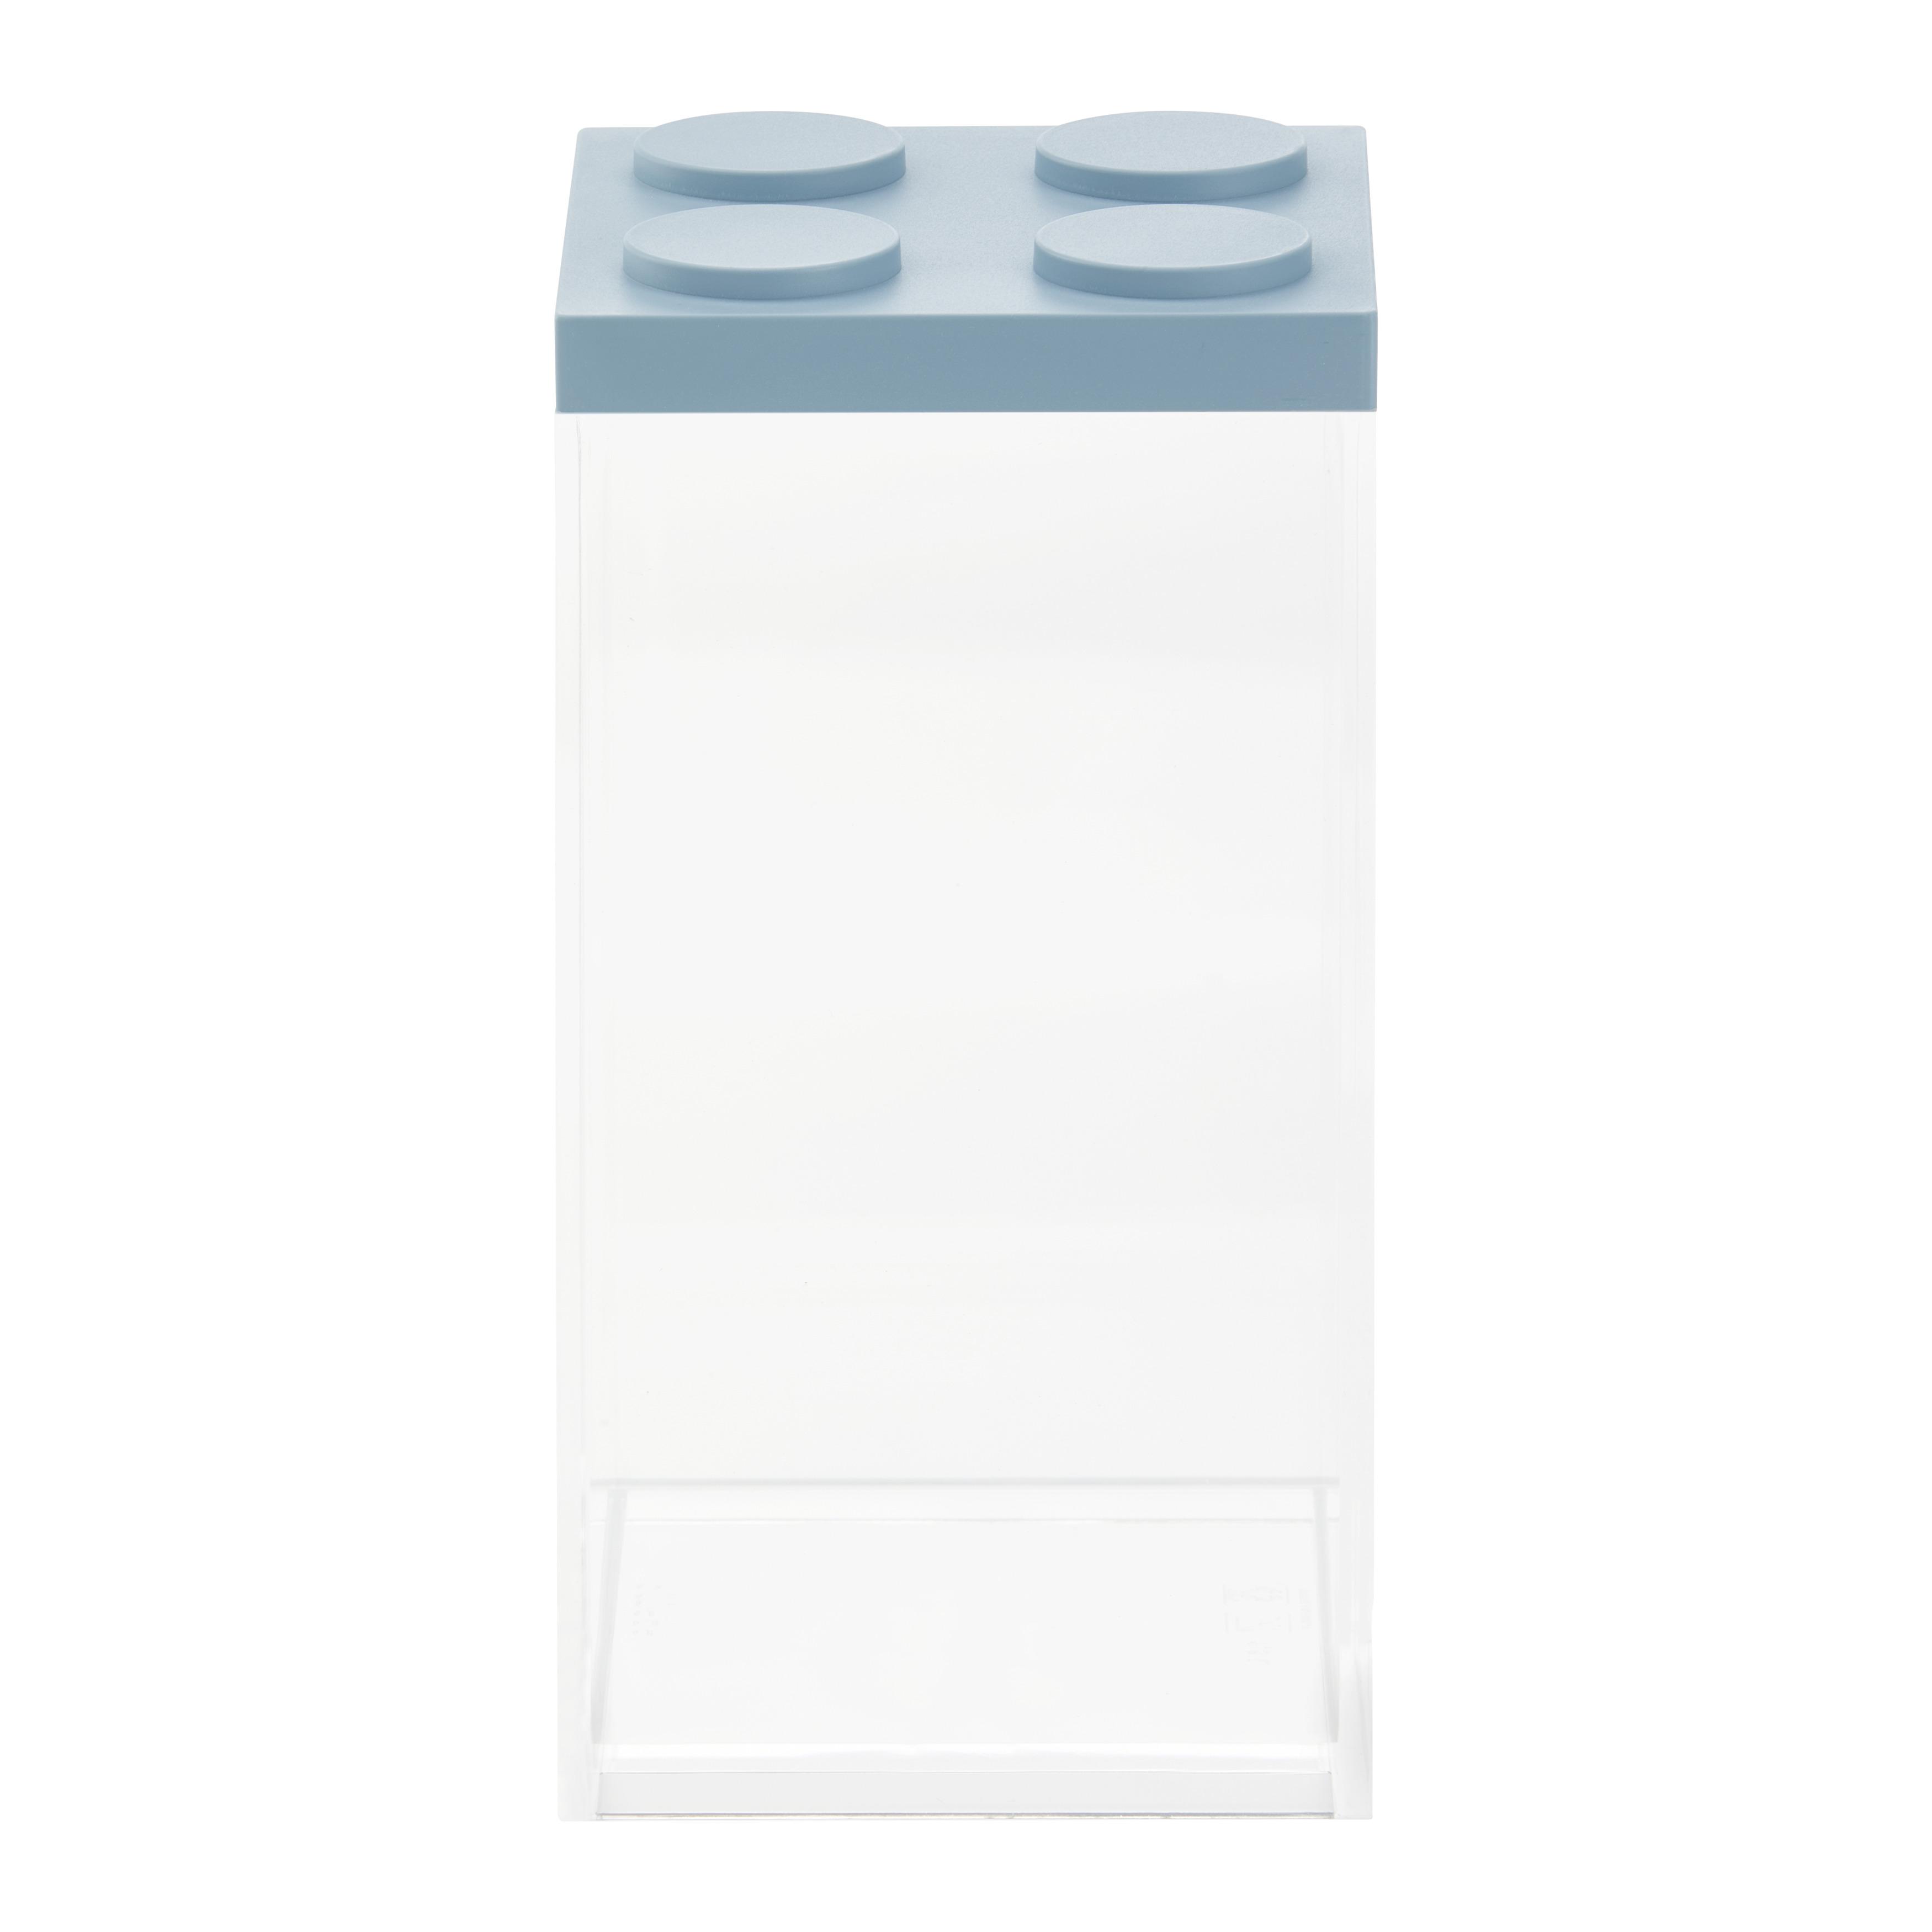 Vorratsdose Esila in Transparent/Blau ca.1,5 l - Blau/Transparent, Kunststoff (10/10/20,5cm)